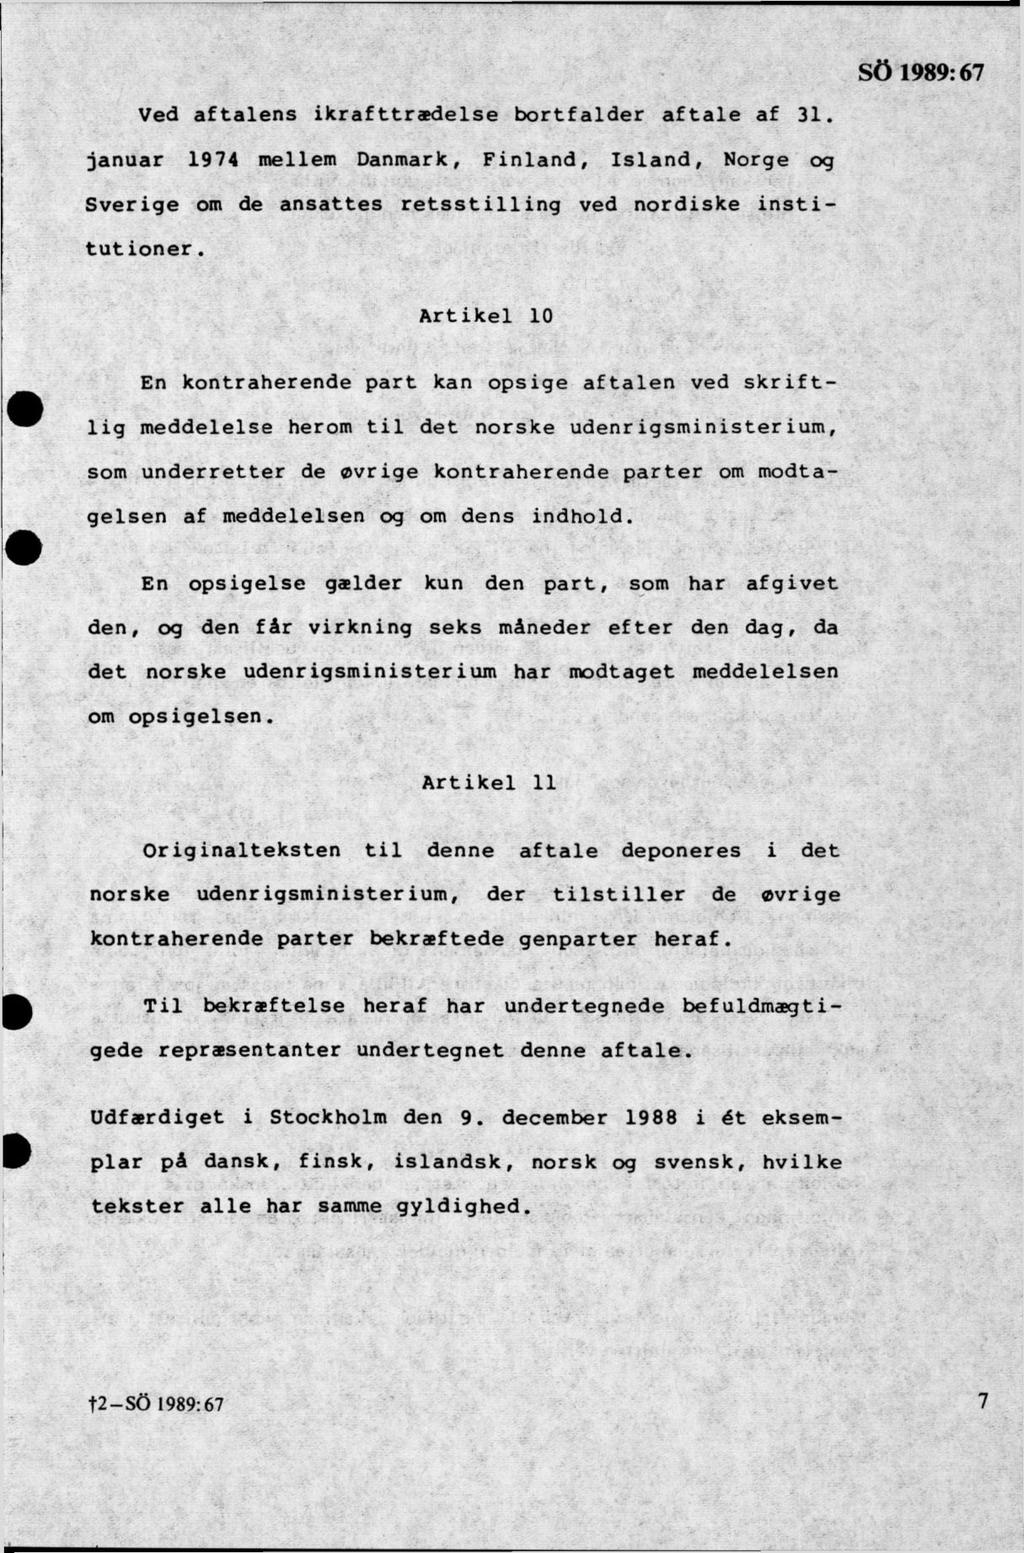 Ved aftalens ikrafttradelse bortfalder aftale af 31. januar 1974 mellem Danmark, Finland, Island, Norge og Sverige om de ansattes retsstilling ved nordiske institutioner.